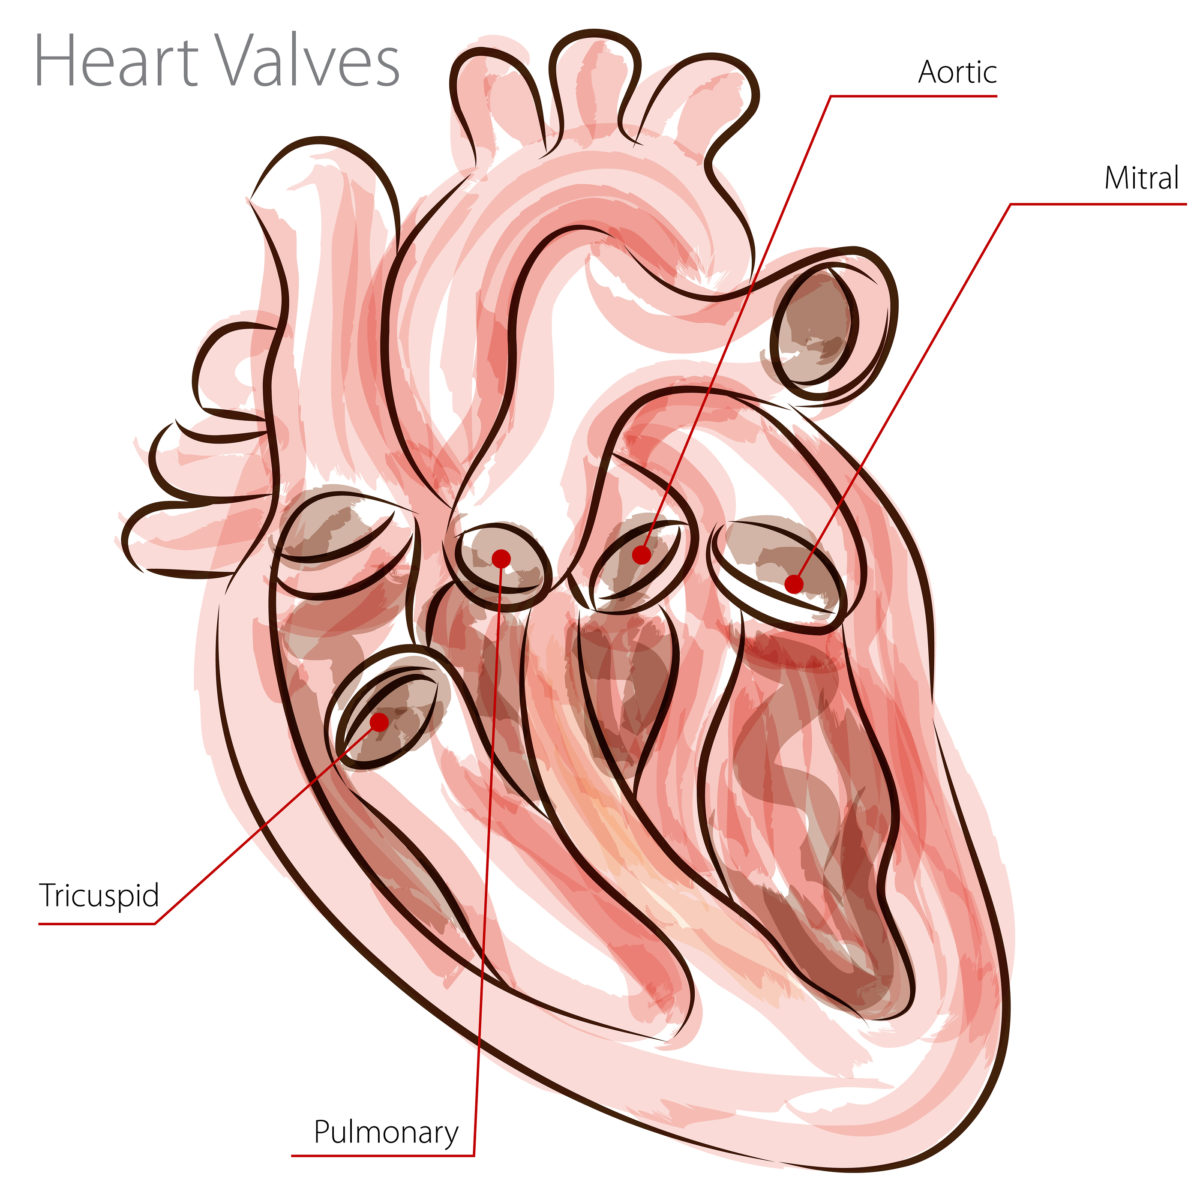 bigstock-An-image-of-a-heart-valves-wat-31240406-1200x1200.jpg